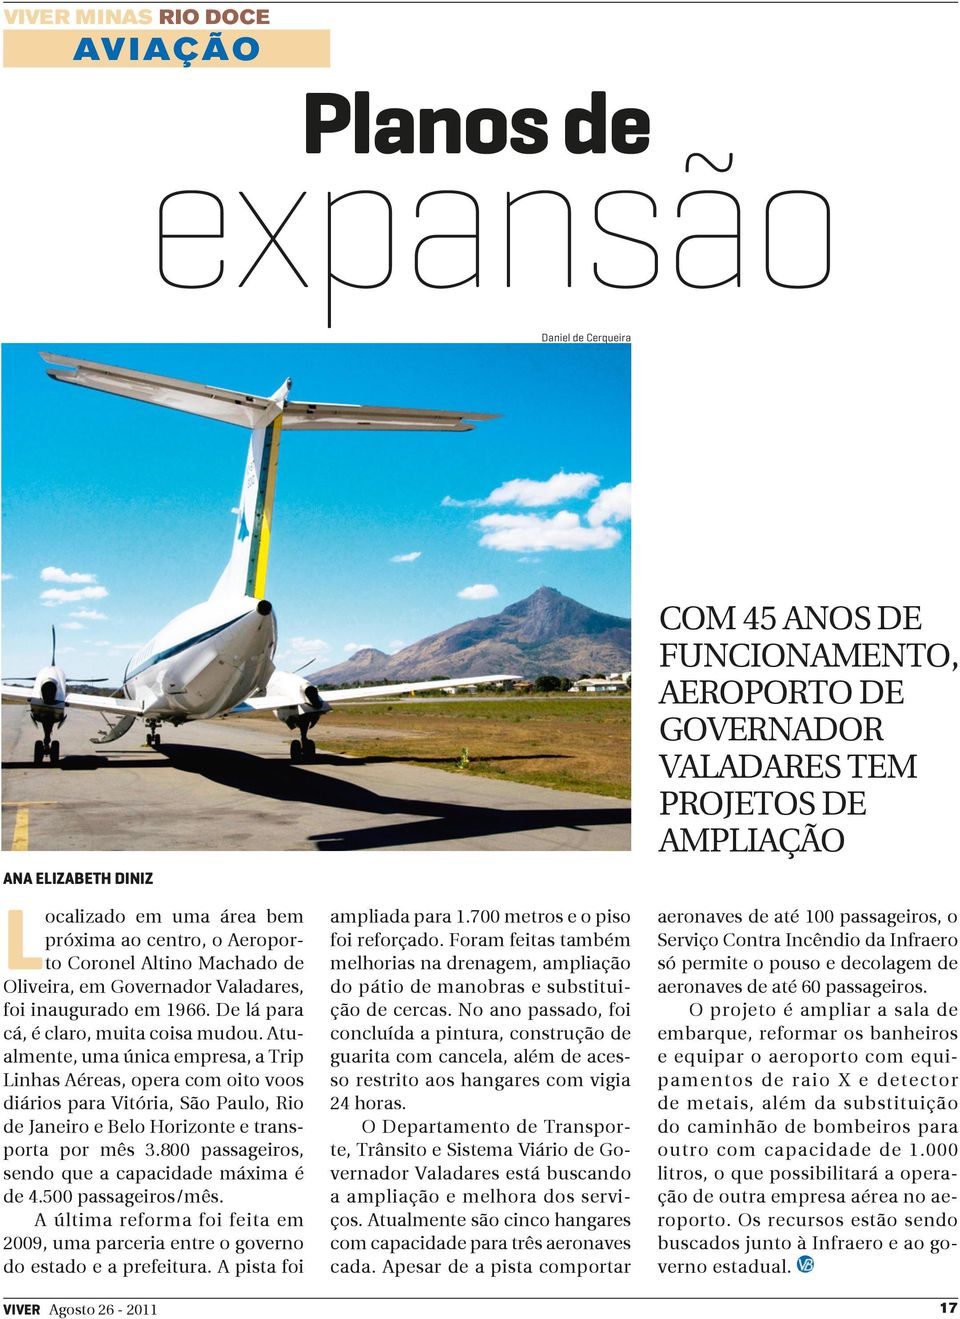 Atualmente, uma única empresa, a Trip Linhas Aéreas, opera com oito voos diários para Vitória, São Paulo, Rio de Janeiro e Belo Horizonte e transporta por mês 3.